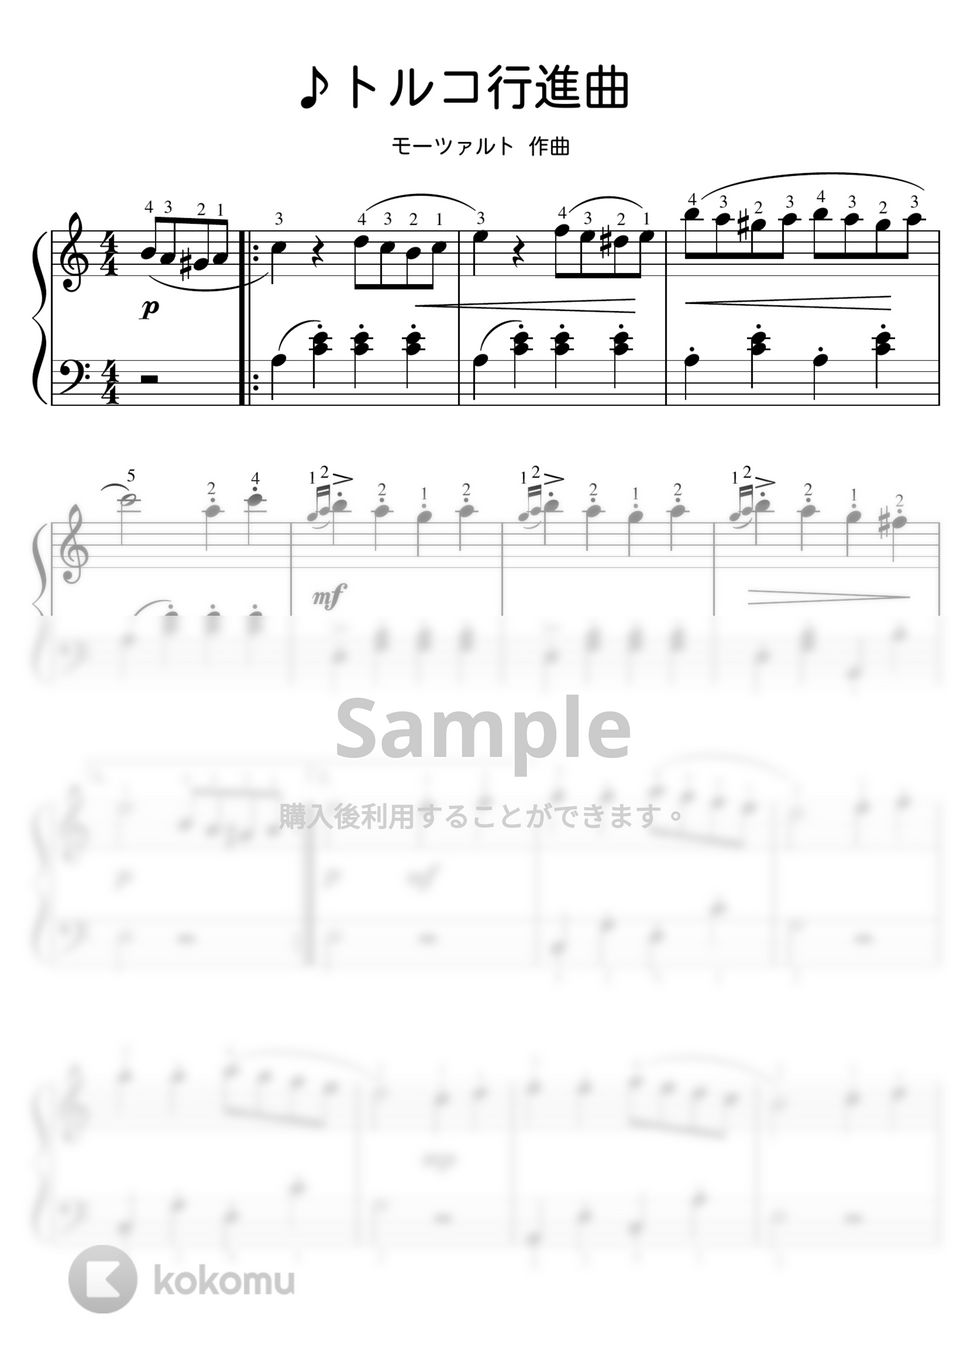 モーツァルト - 【初級】トルコ行進曲 (ピアノ初級) by ピアノのせんせいの楽譜集